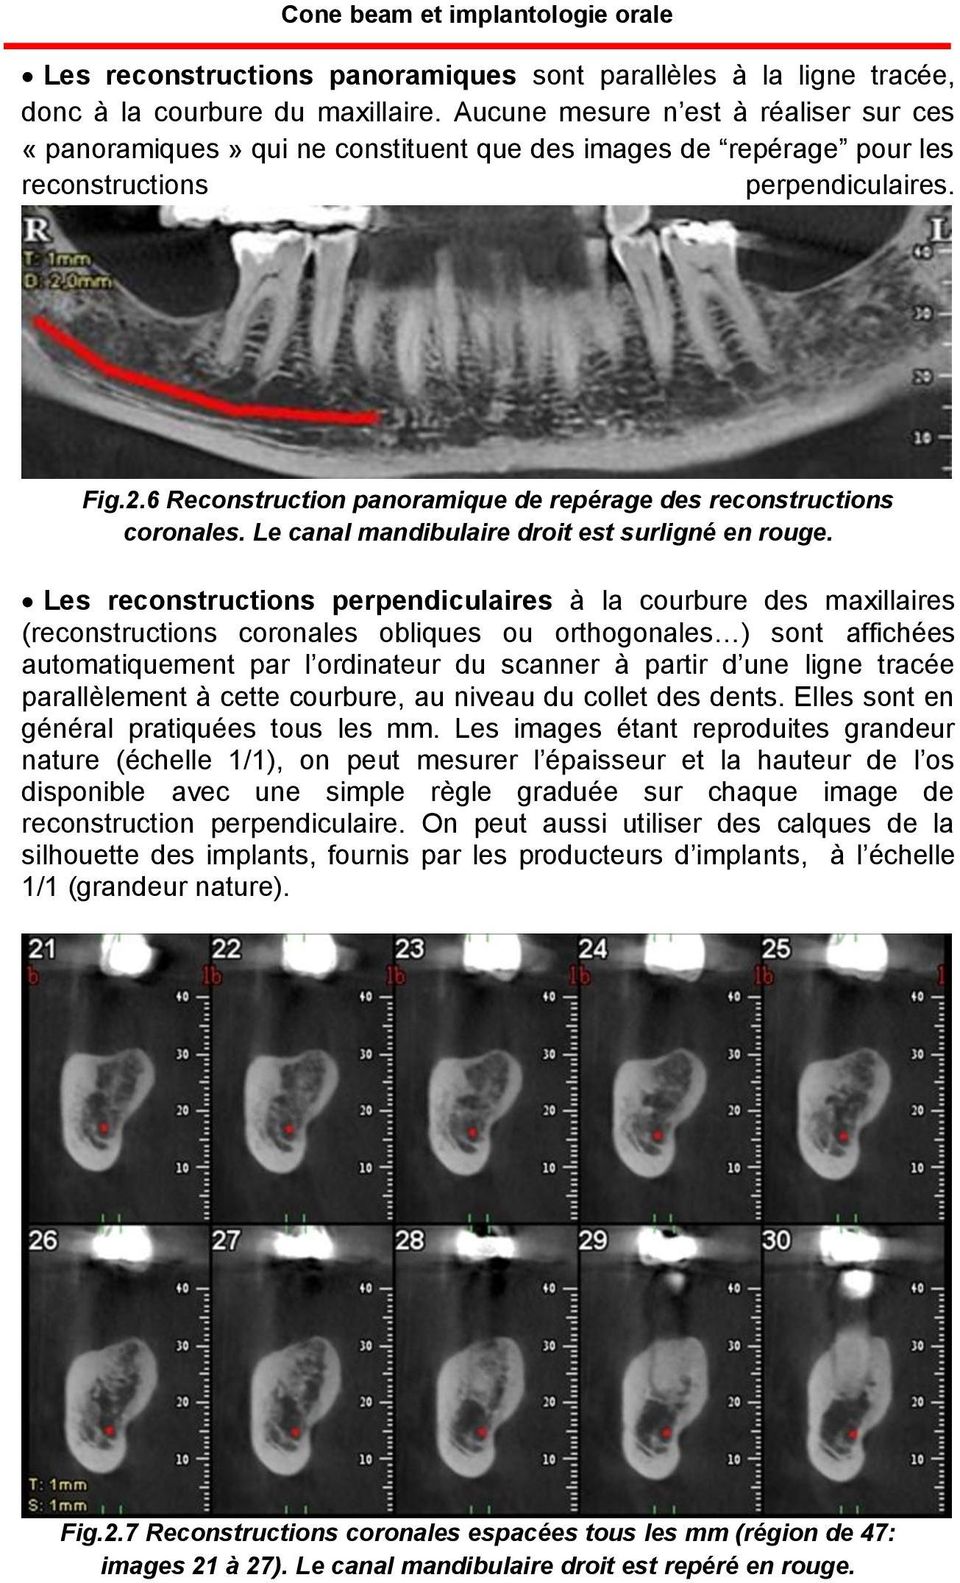 6 Reconstruction panoramique de repérage des reconstructions coronales. Le canal mandibulaire droit est surligné en rouge.